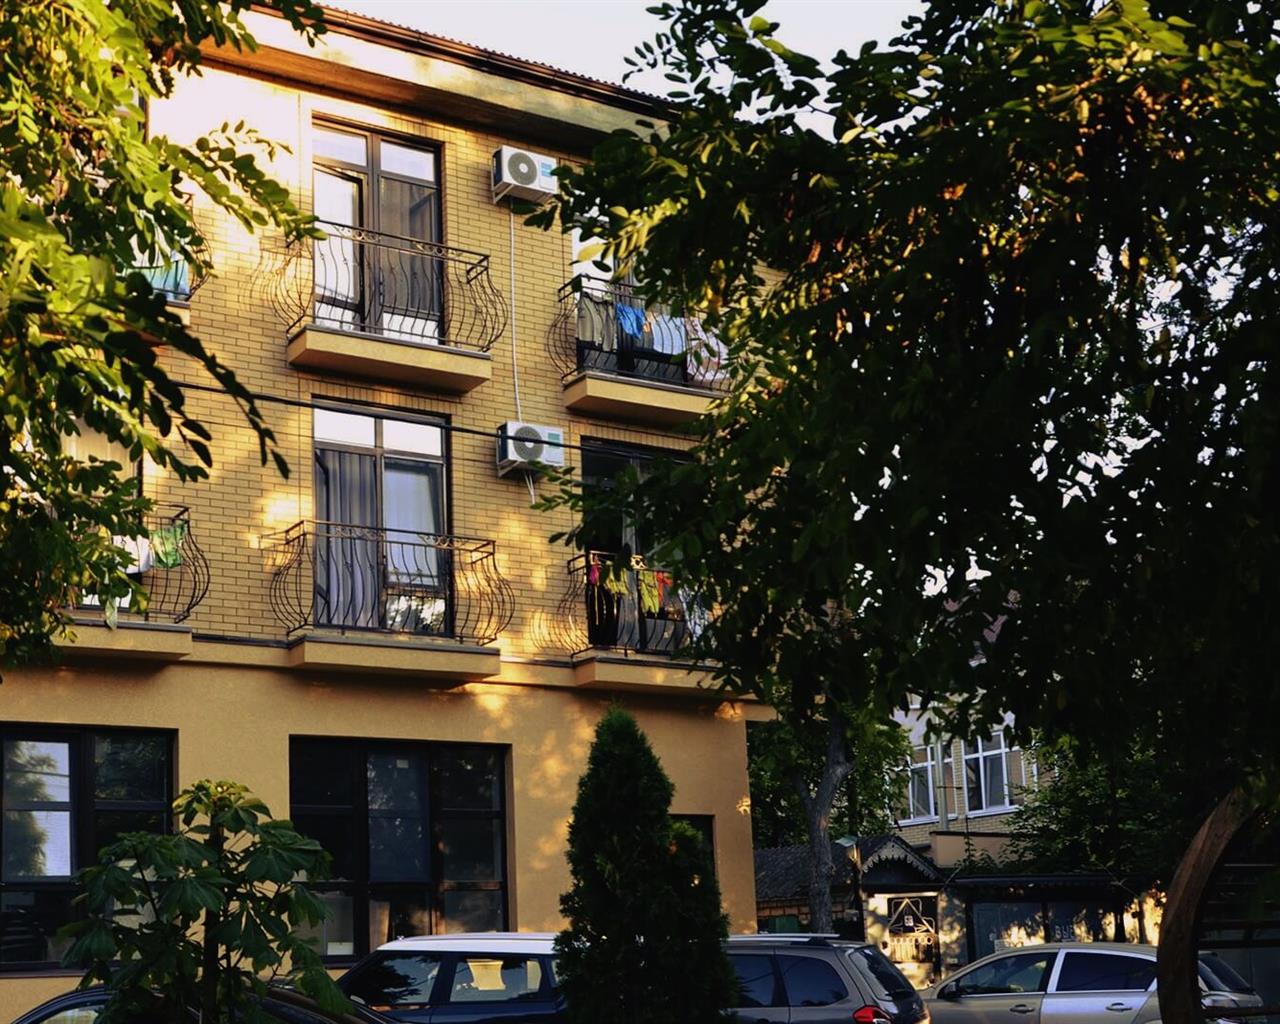 КОНТИНЕНТАЛЬ Гостевой дом — GREEN DOORS MINI HOTELS